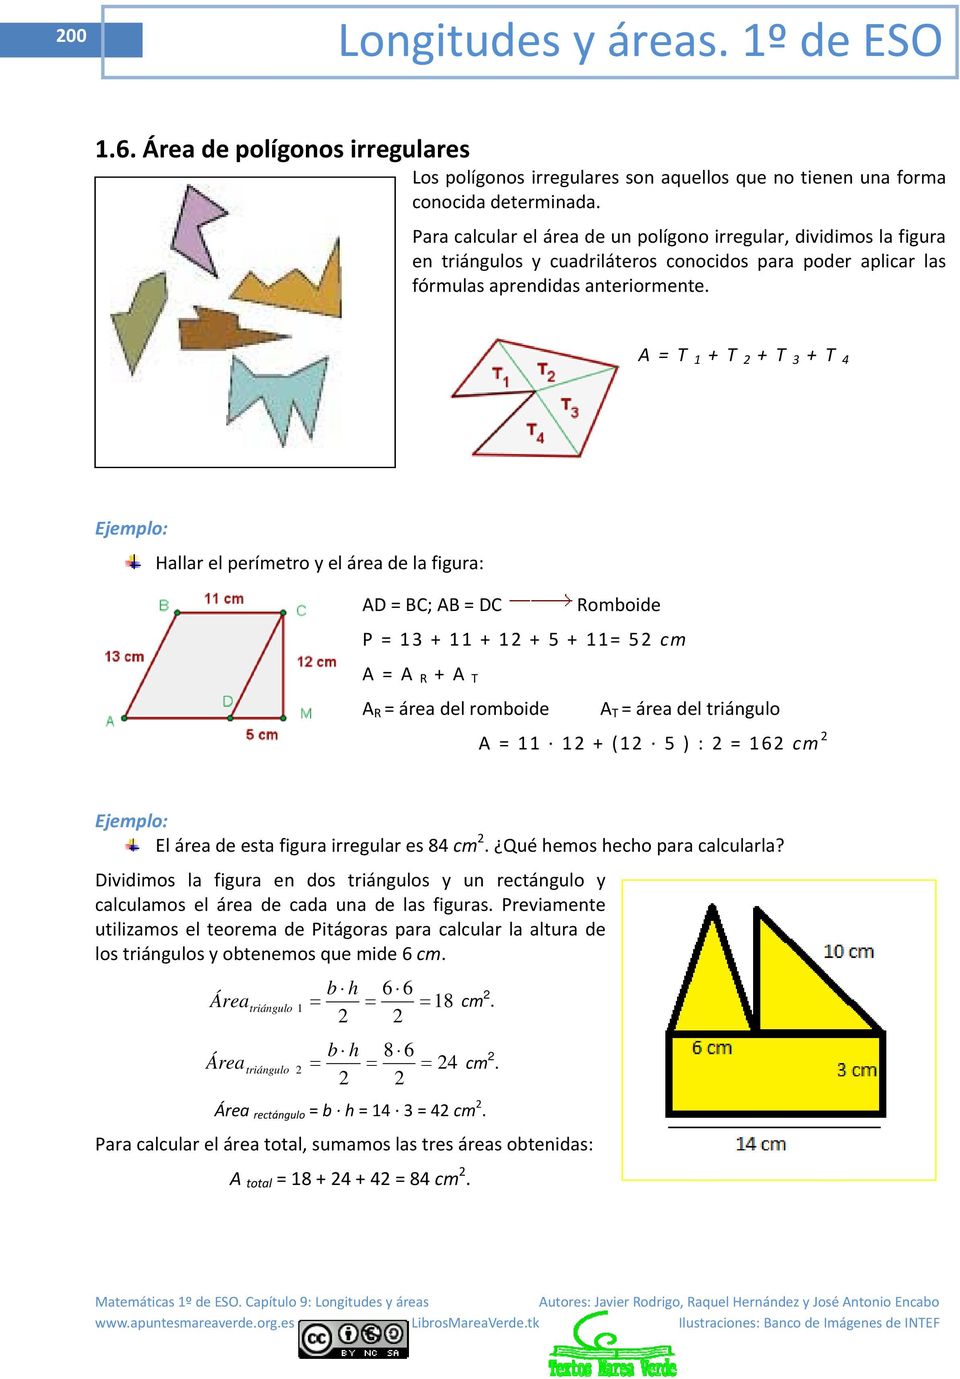 A = T 1 + T + T 3 + T 4 Ejemplo: Hallar el perímetro y el área de la figura: AD = BC; AB = DC Romboide P = 13 + 11 + 1 + 5 + 11= 5 cm A = A R + A T A R = área del romboide A T = área del triángulo A